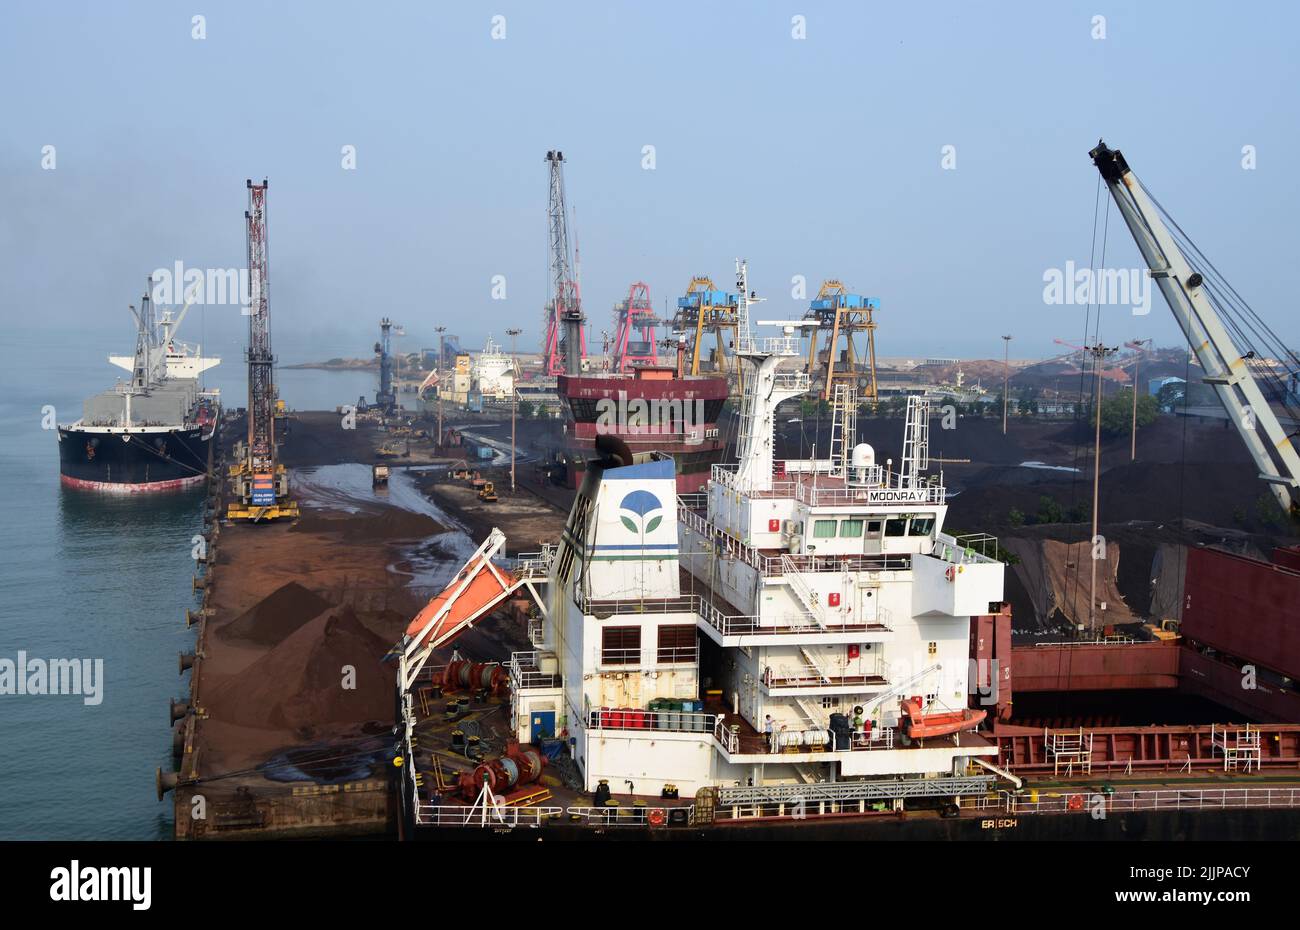 Das Bild wurde im April 2019 aufgenommen und zeigt verschiedene Kransysteme zum Be- und Entladen von Schiffen im Hafen von New Mangalore India Stockfoto